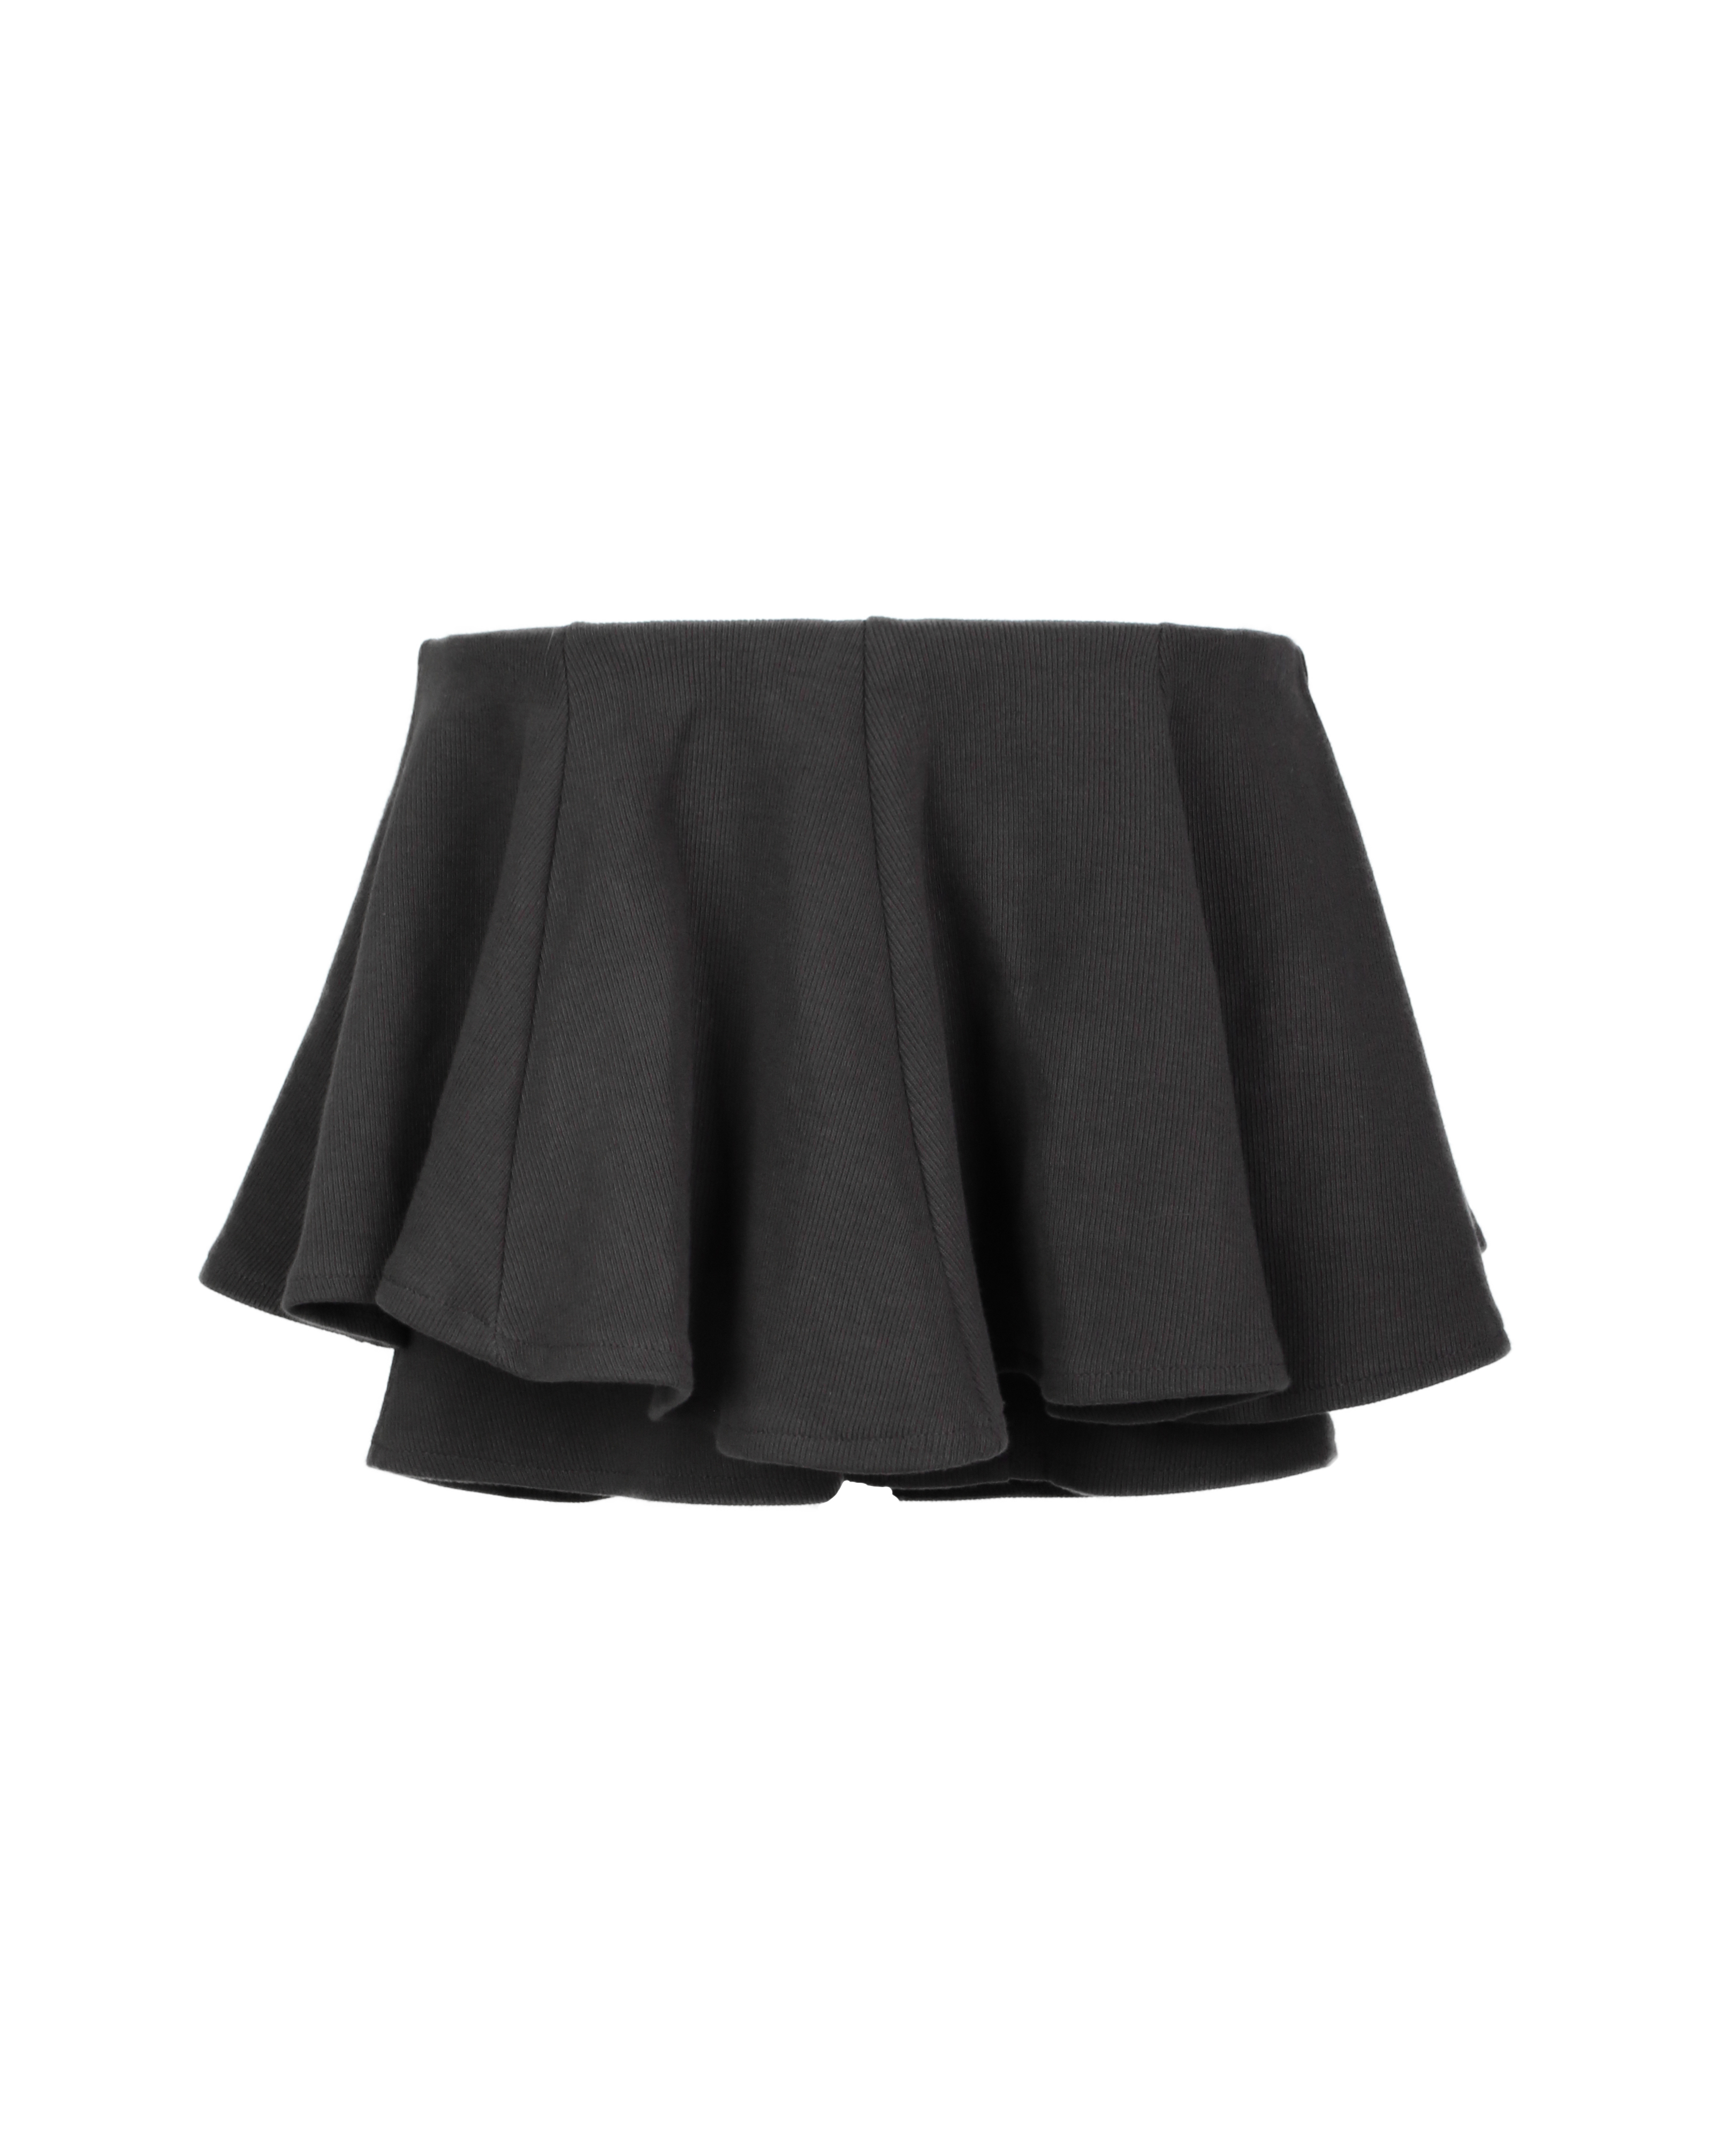 [made]ballet pleats skirt